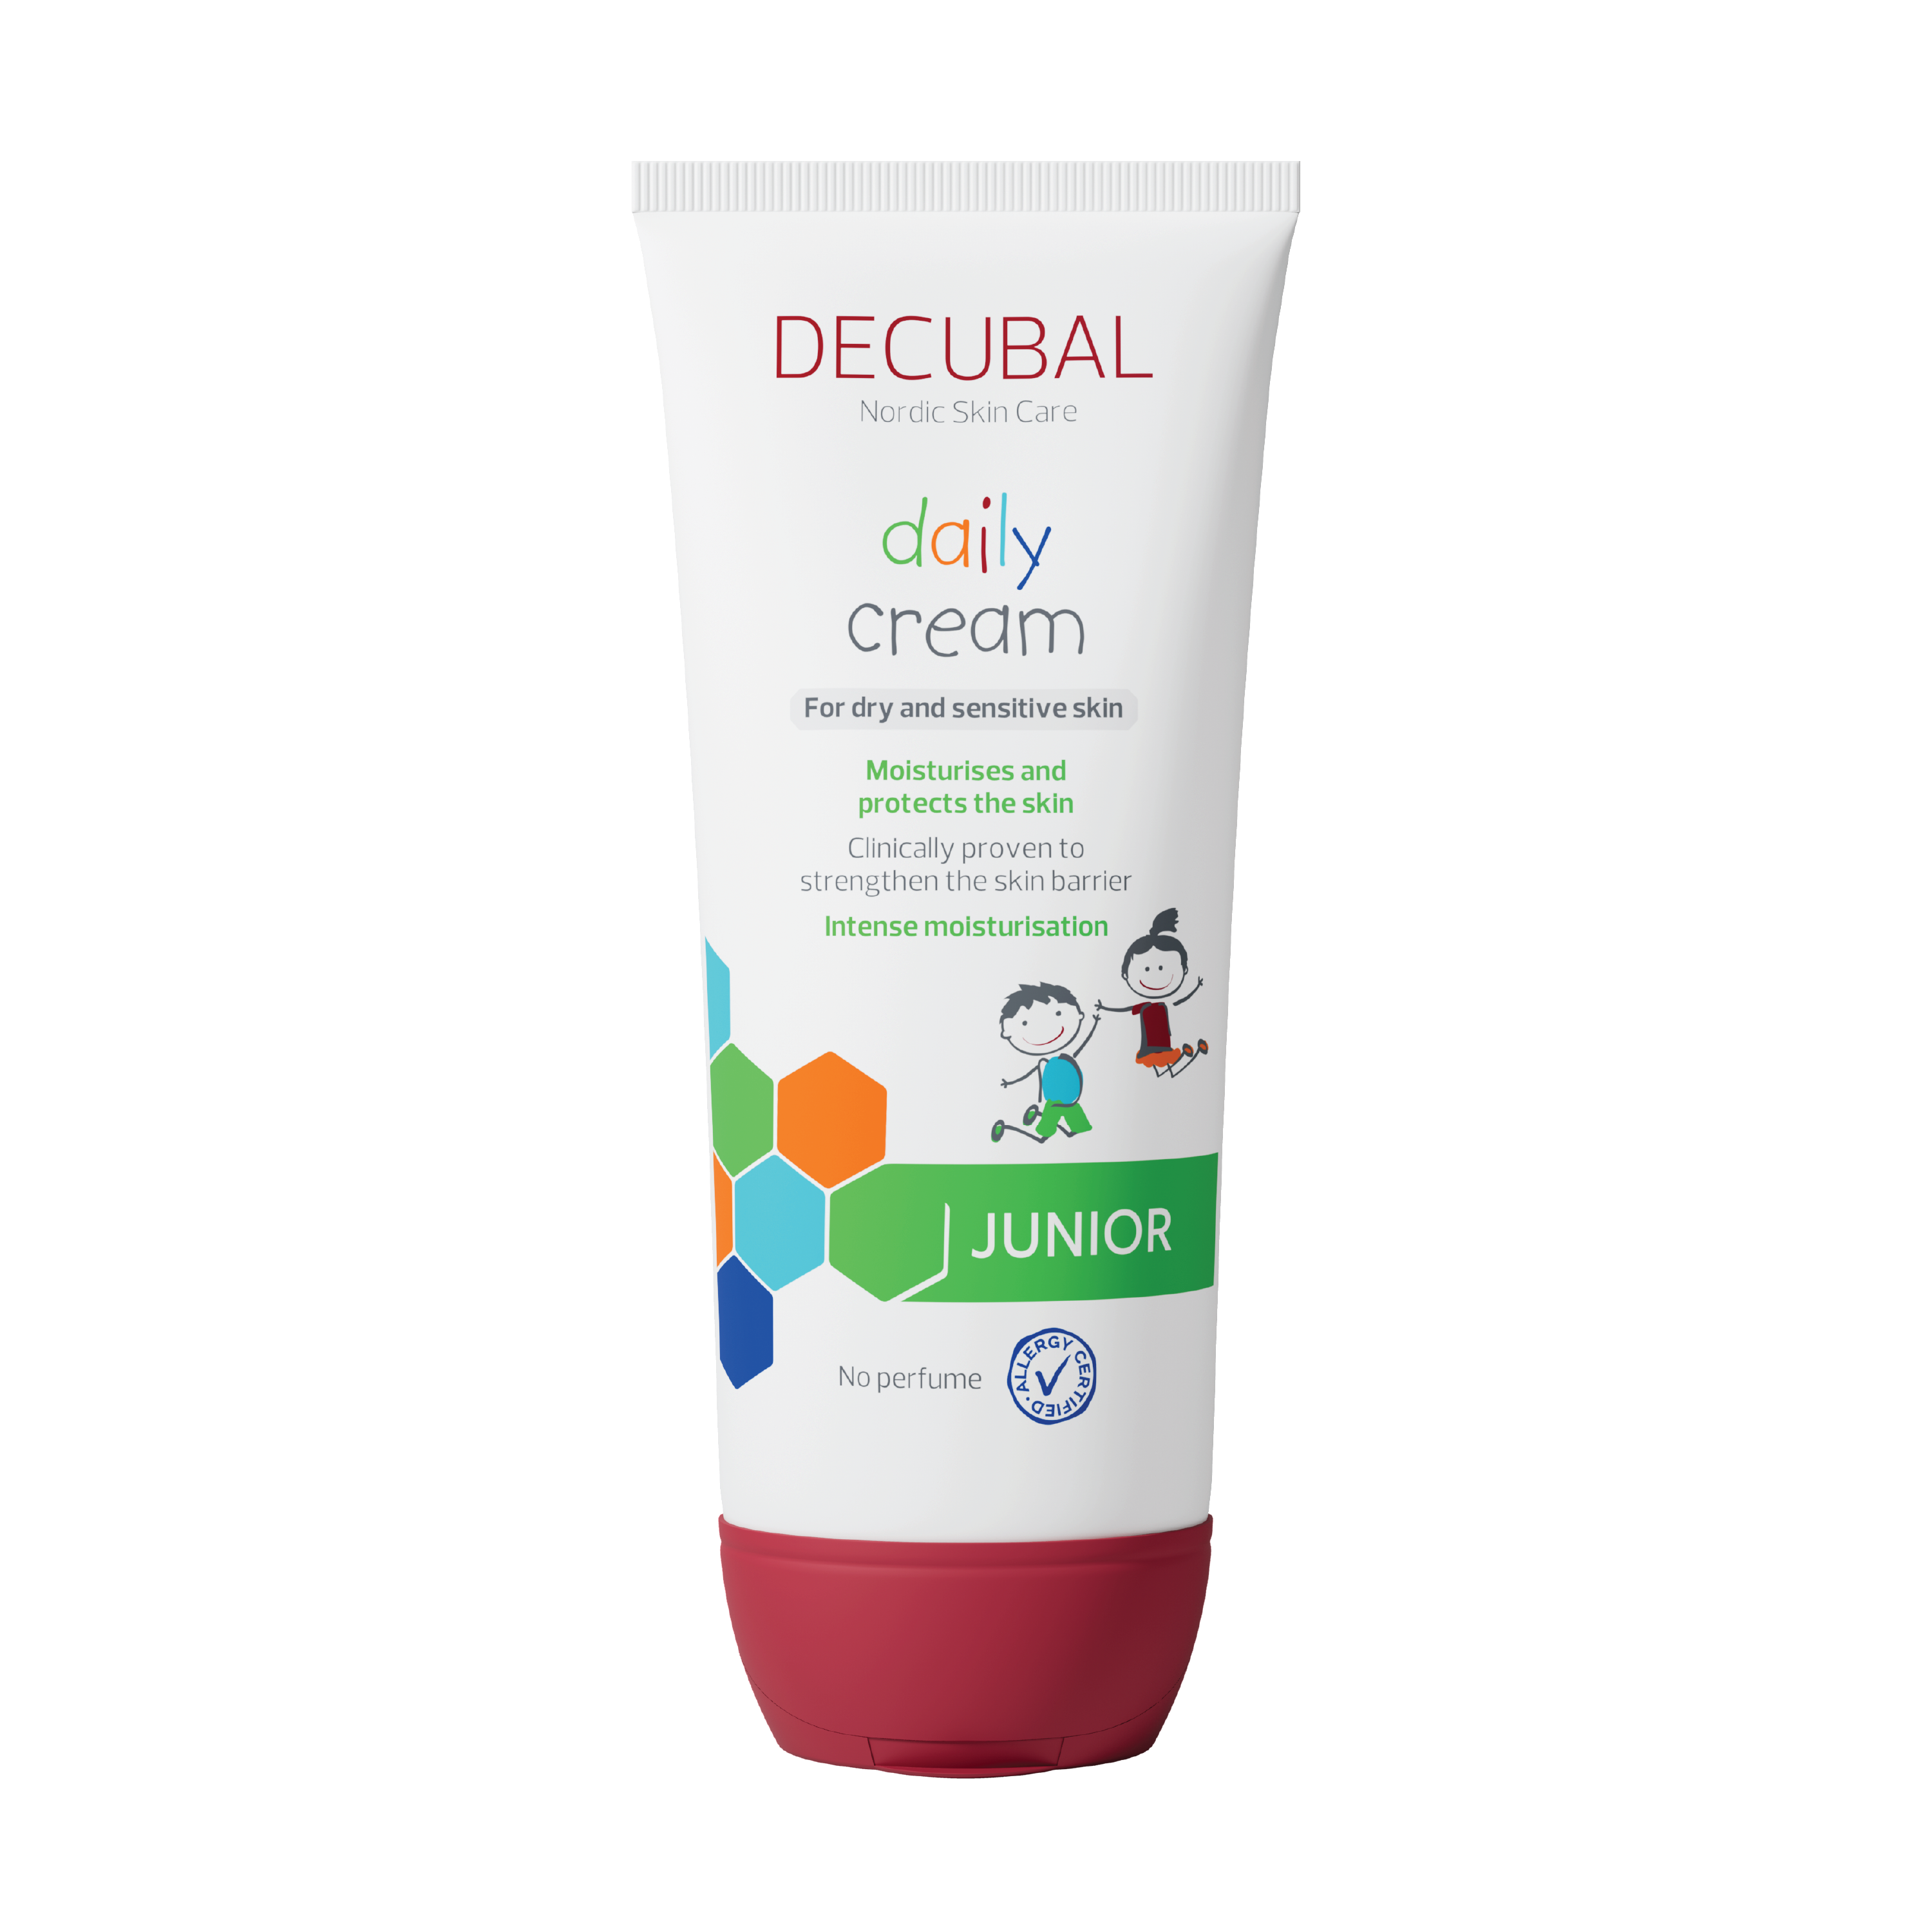 Decubal Junior Cream Daily, 200 ml